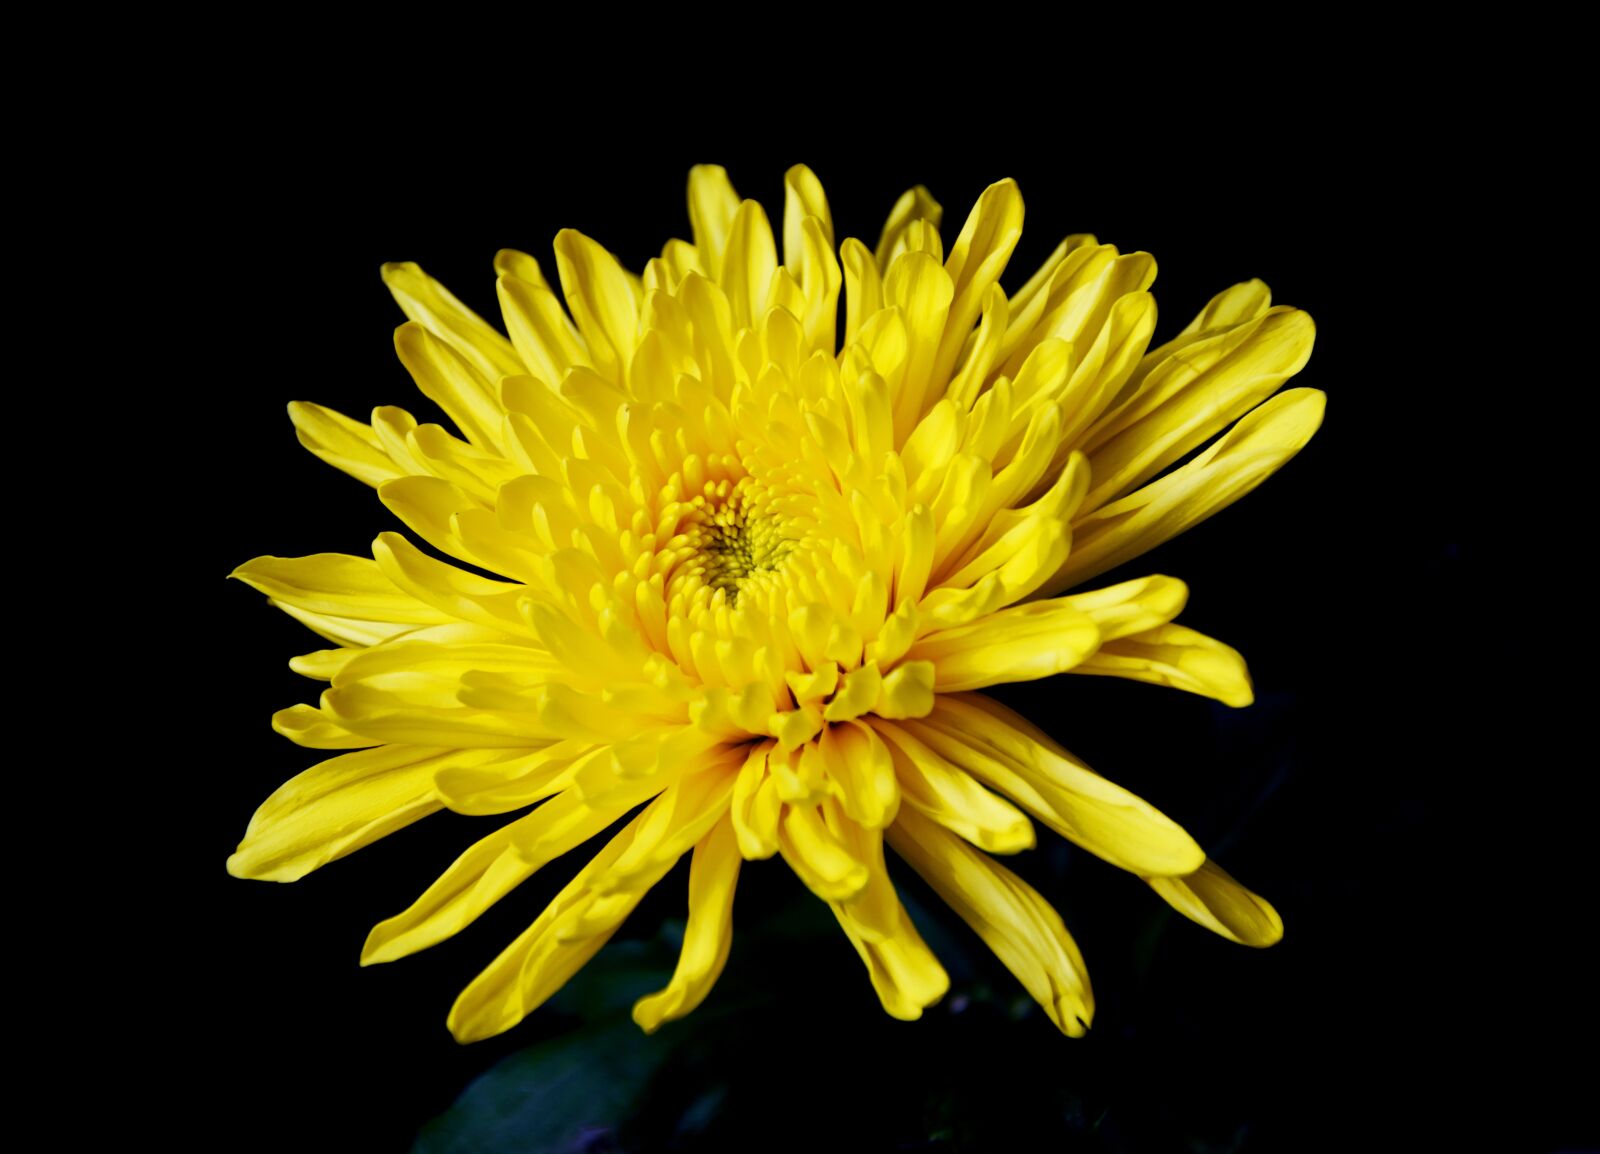 Nikon D7200 sample photo. Chrysanthemum, yellow chrysanthemum, yellow photography